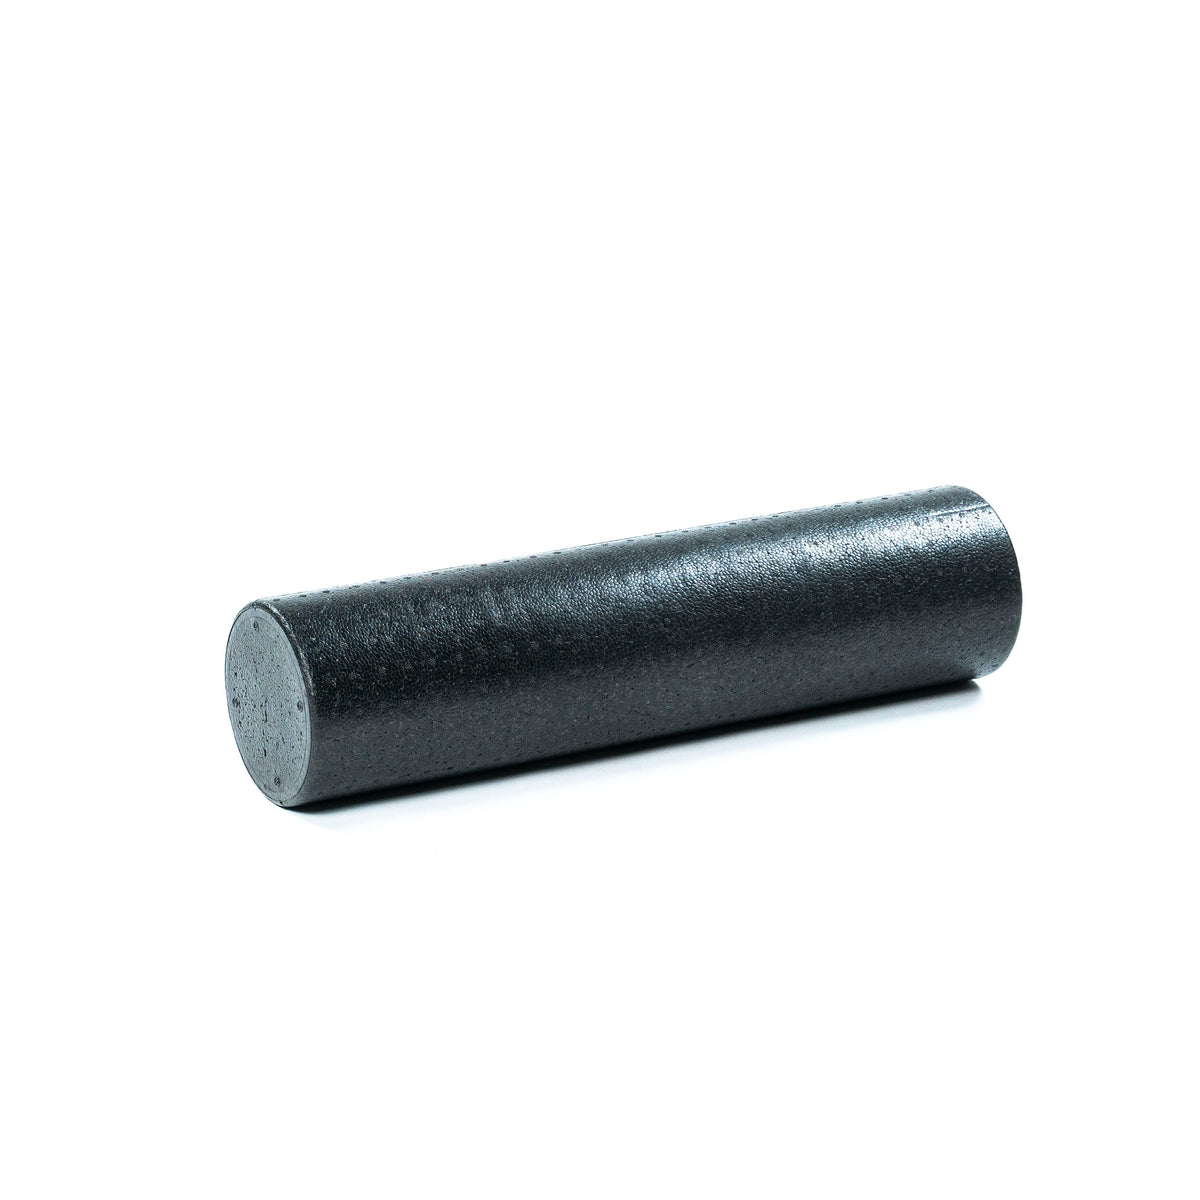 Black Foam Roller - 60cm